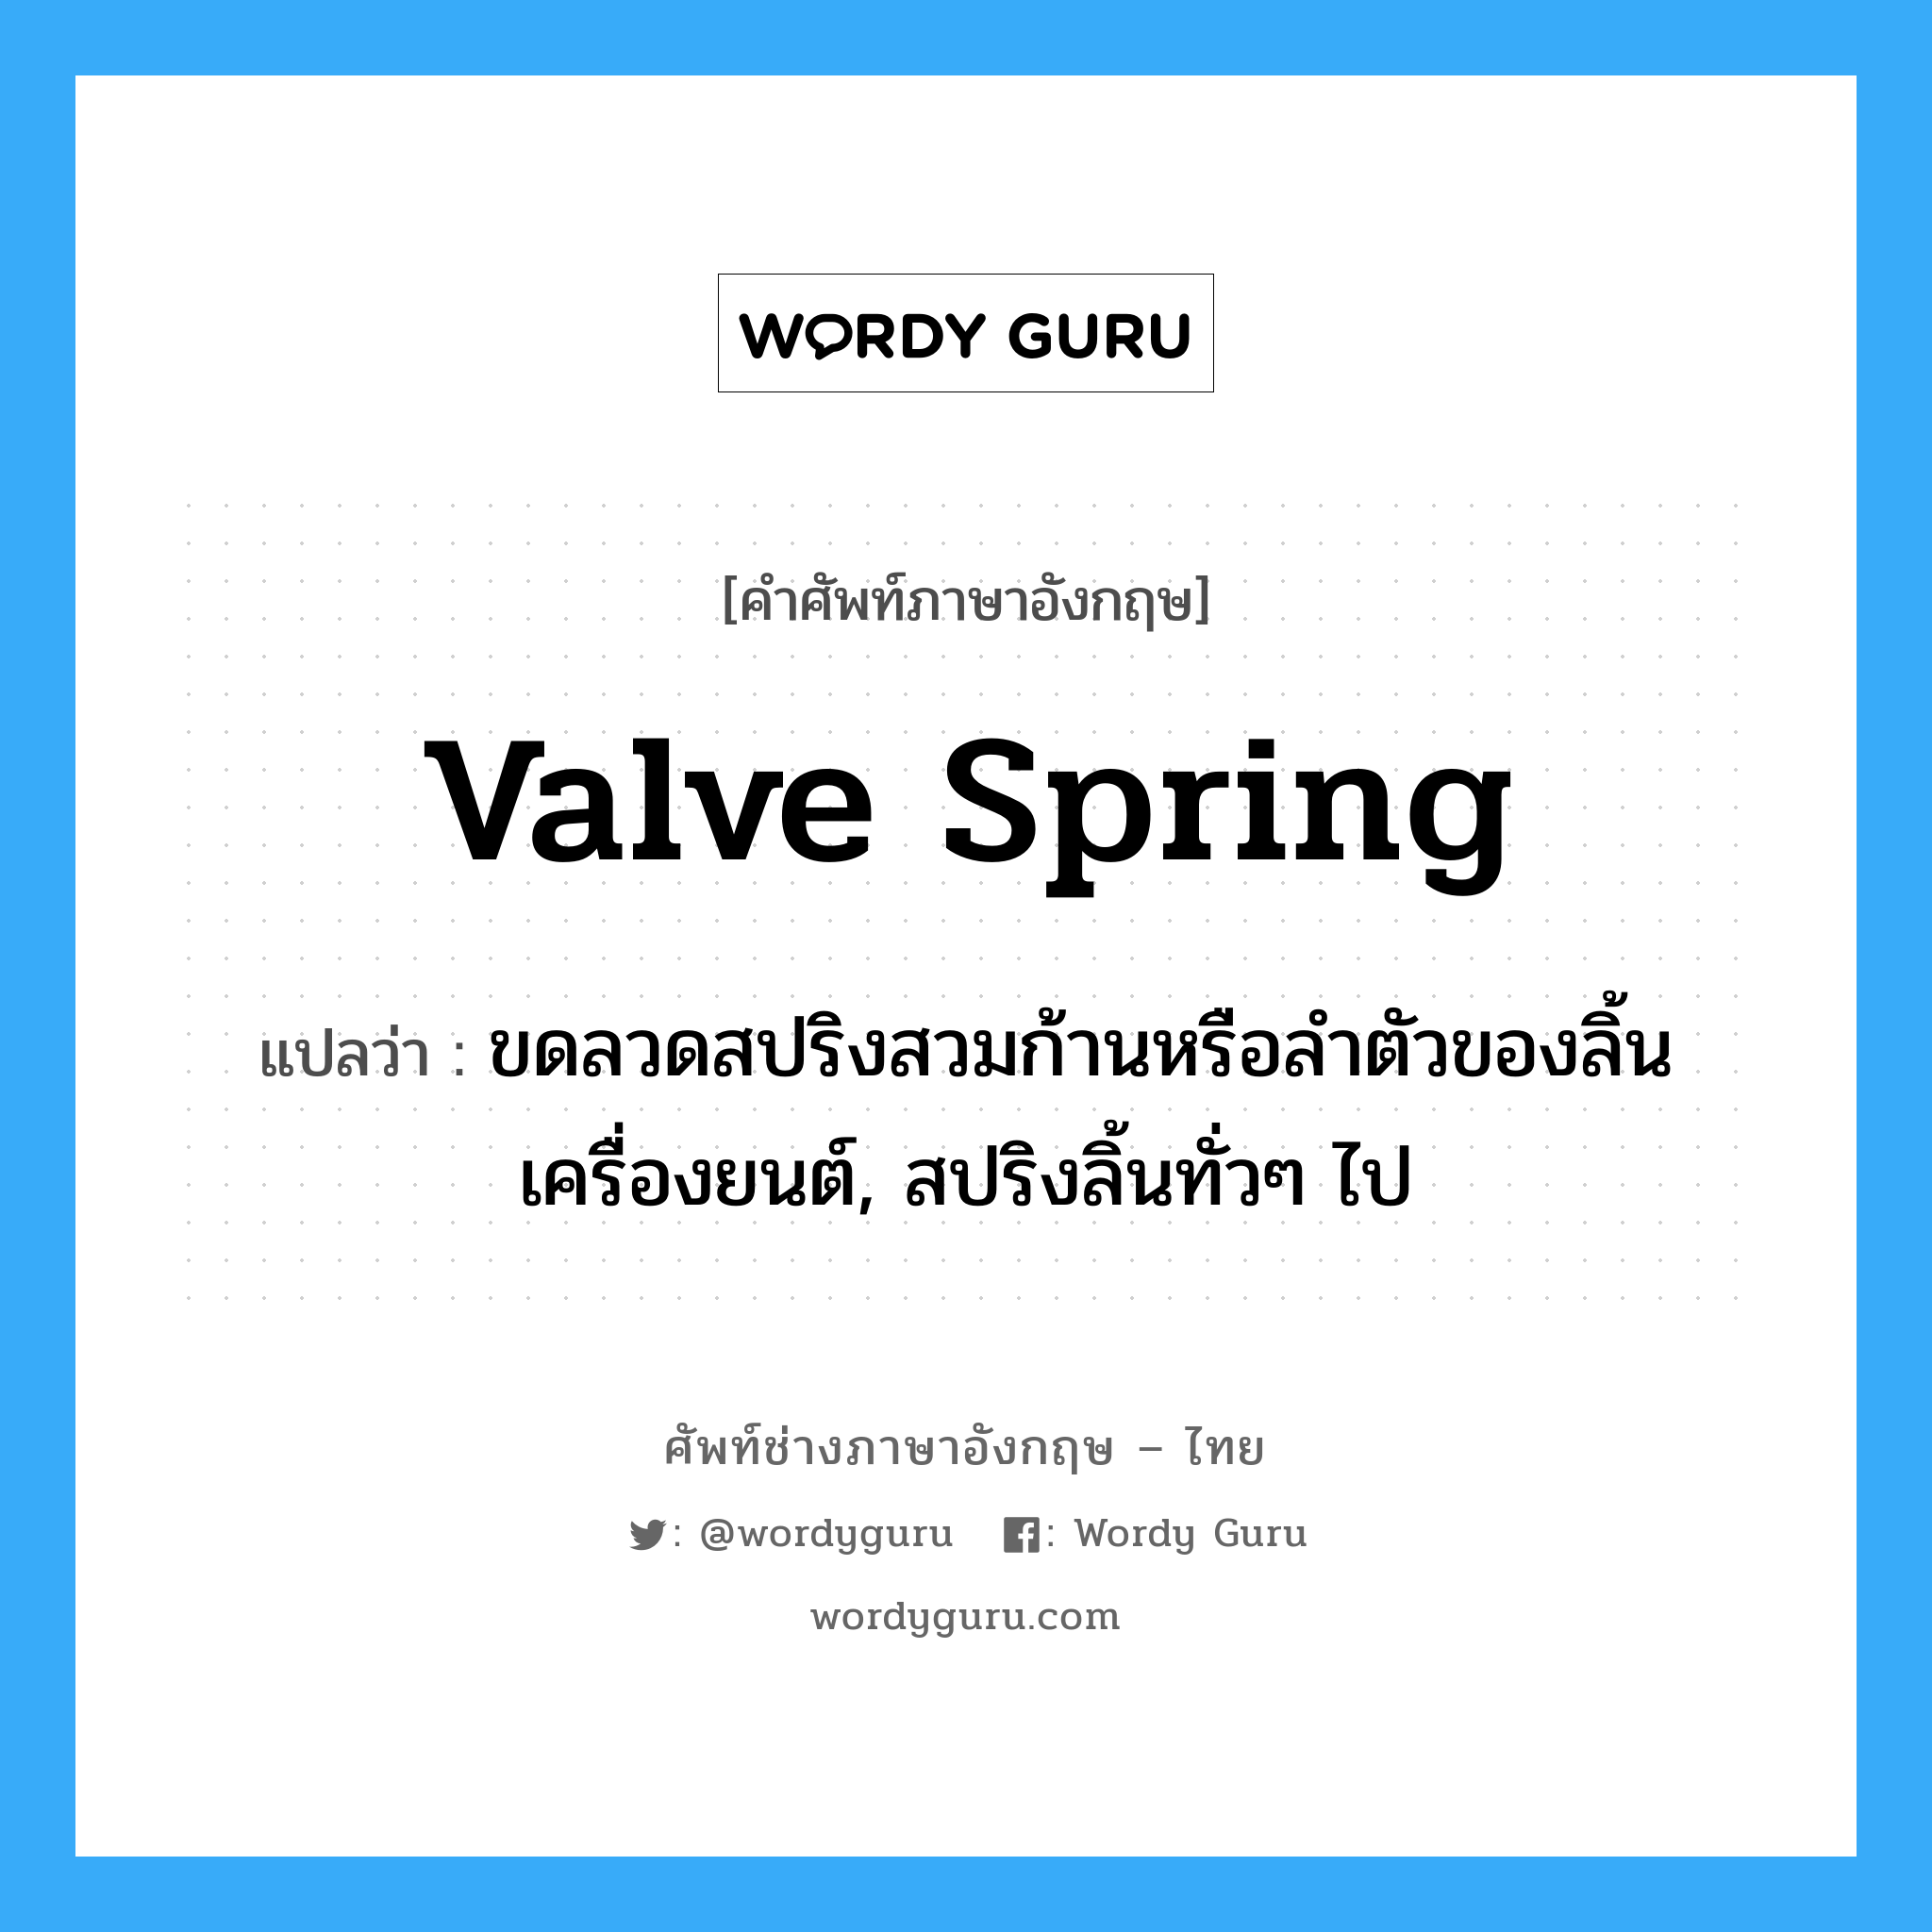 valve spring แปลว่า?, คำศัพท์ช่างภาษาอังกฤษ - ไทย valve spring คำศัพท์ภาษาอังกฤษ valve spring แปลว่า ขดลวดสปริงสวมก้านหรือลำตัวของลิ้นเครื่องยนต์, สปริงลิ้นทั่วๆ ไป